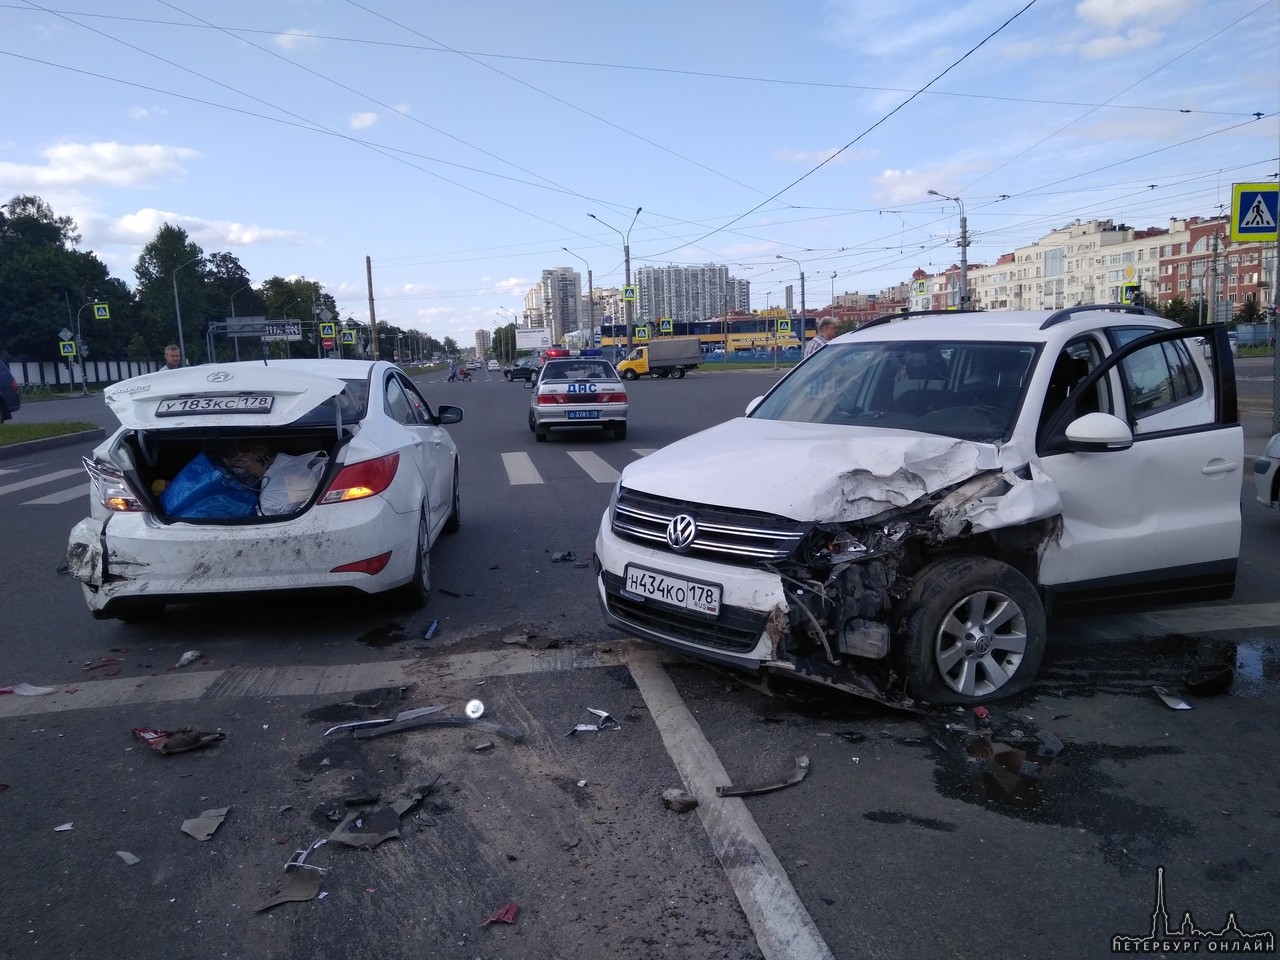 18 августа 2019 г. в районе 16:00 на перекрестке Выборгского шоссе и пр. Луначарского произошло ДТП....